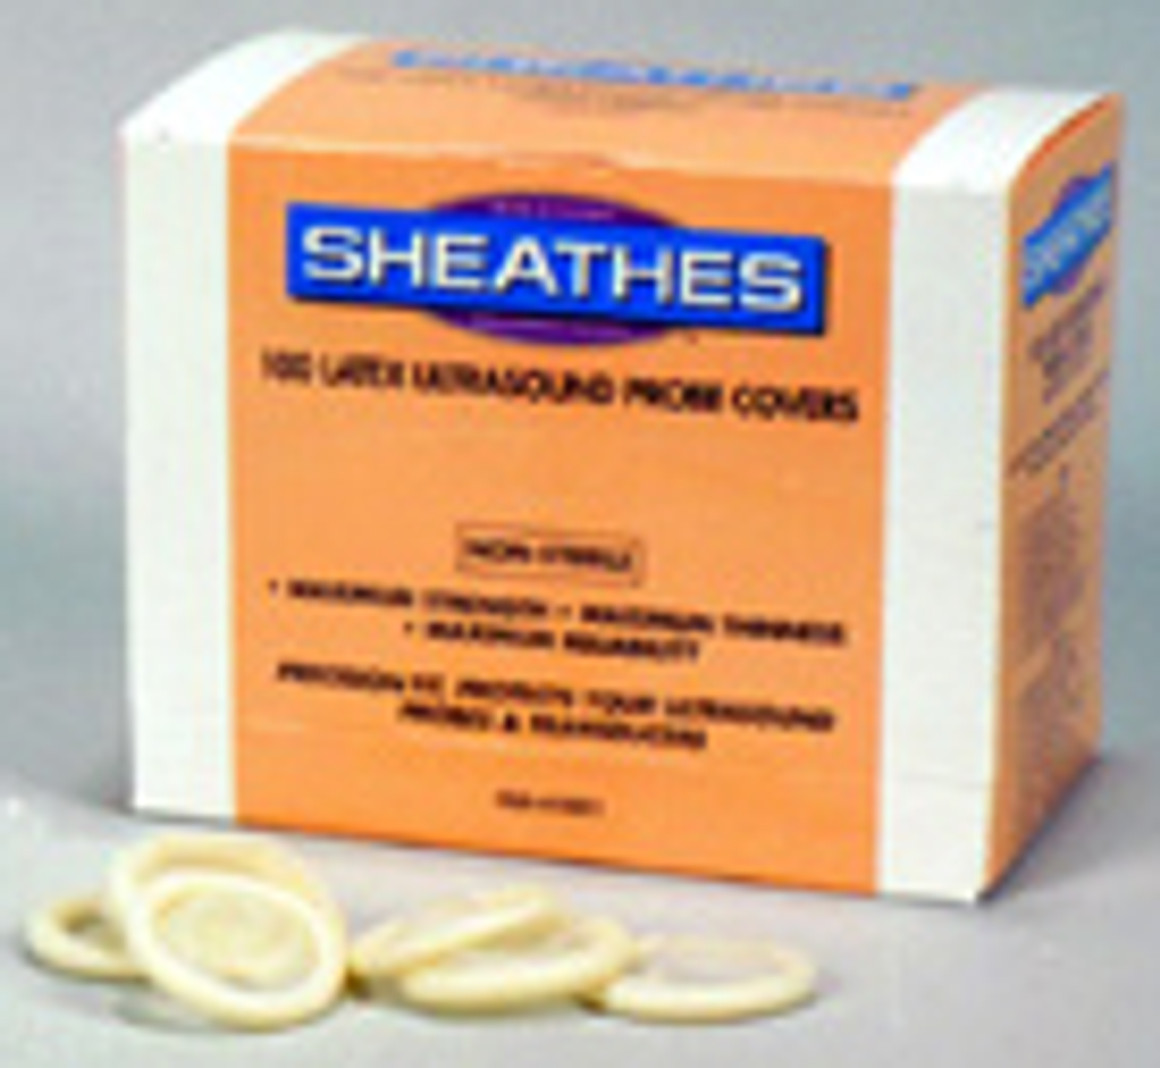 Sheathes 10020